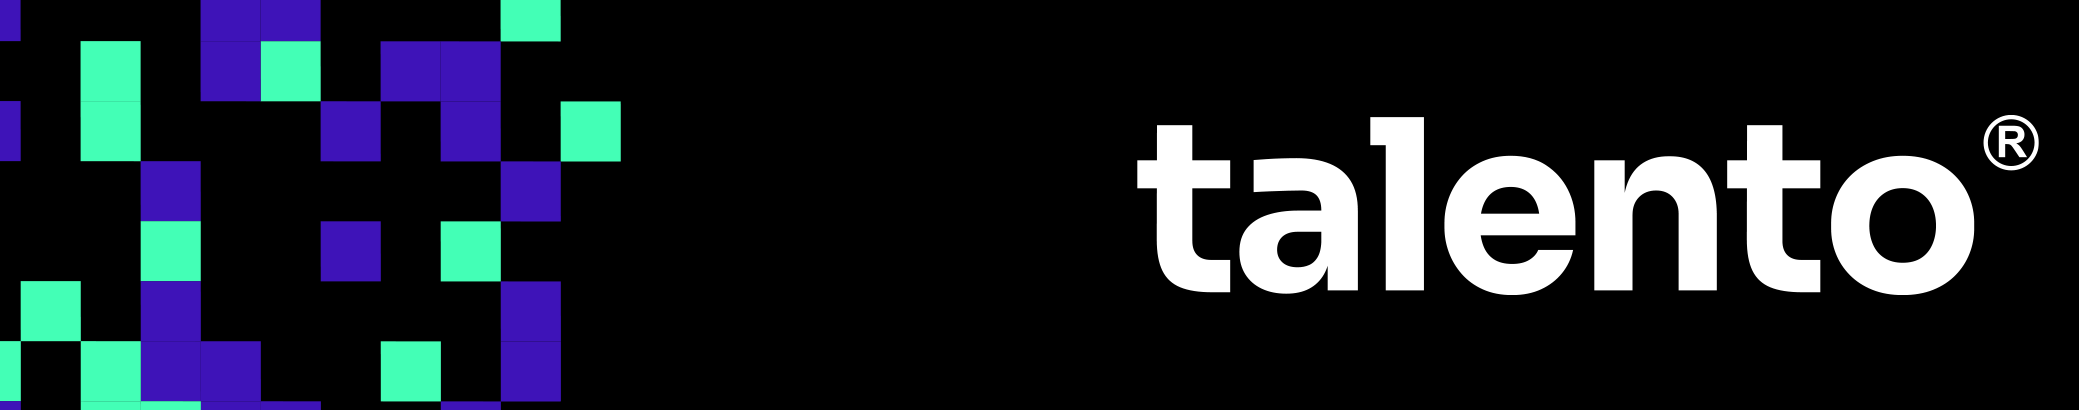 Talento Design & Marketing's profile banner